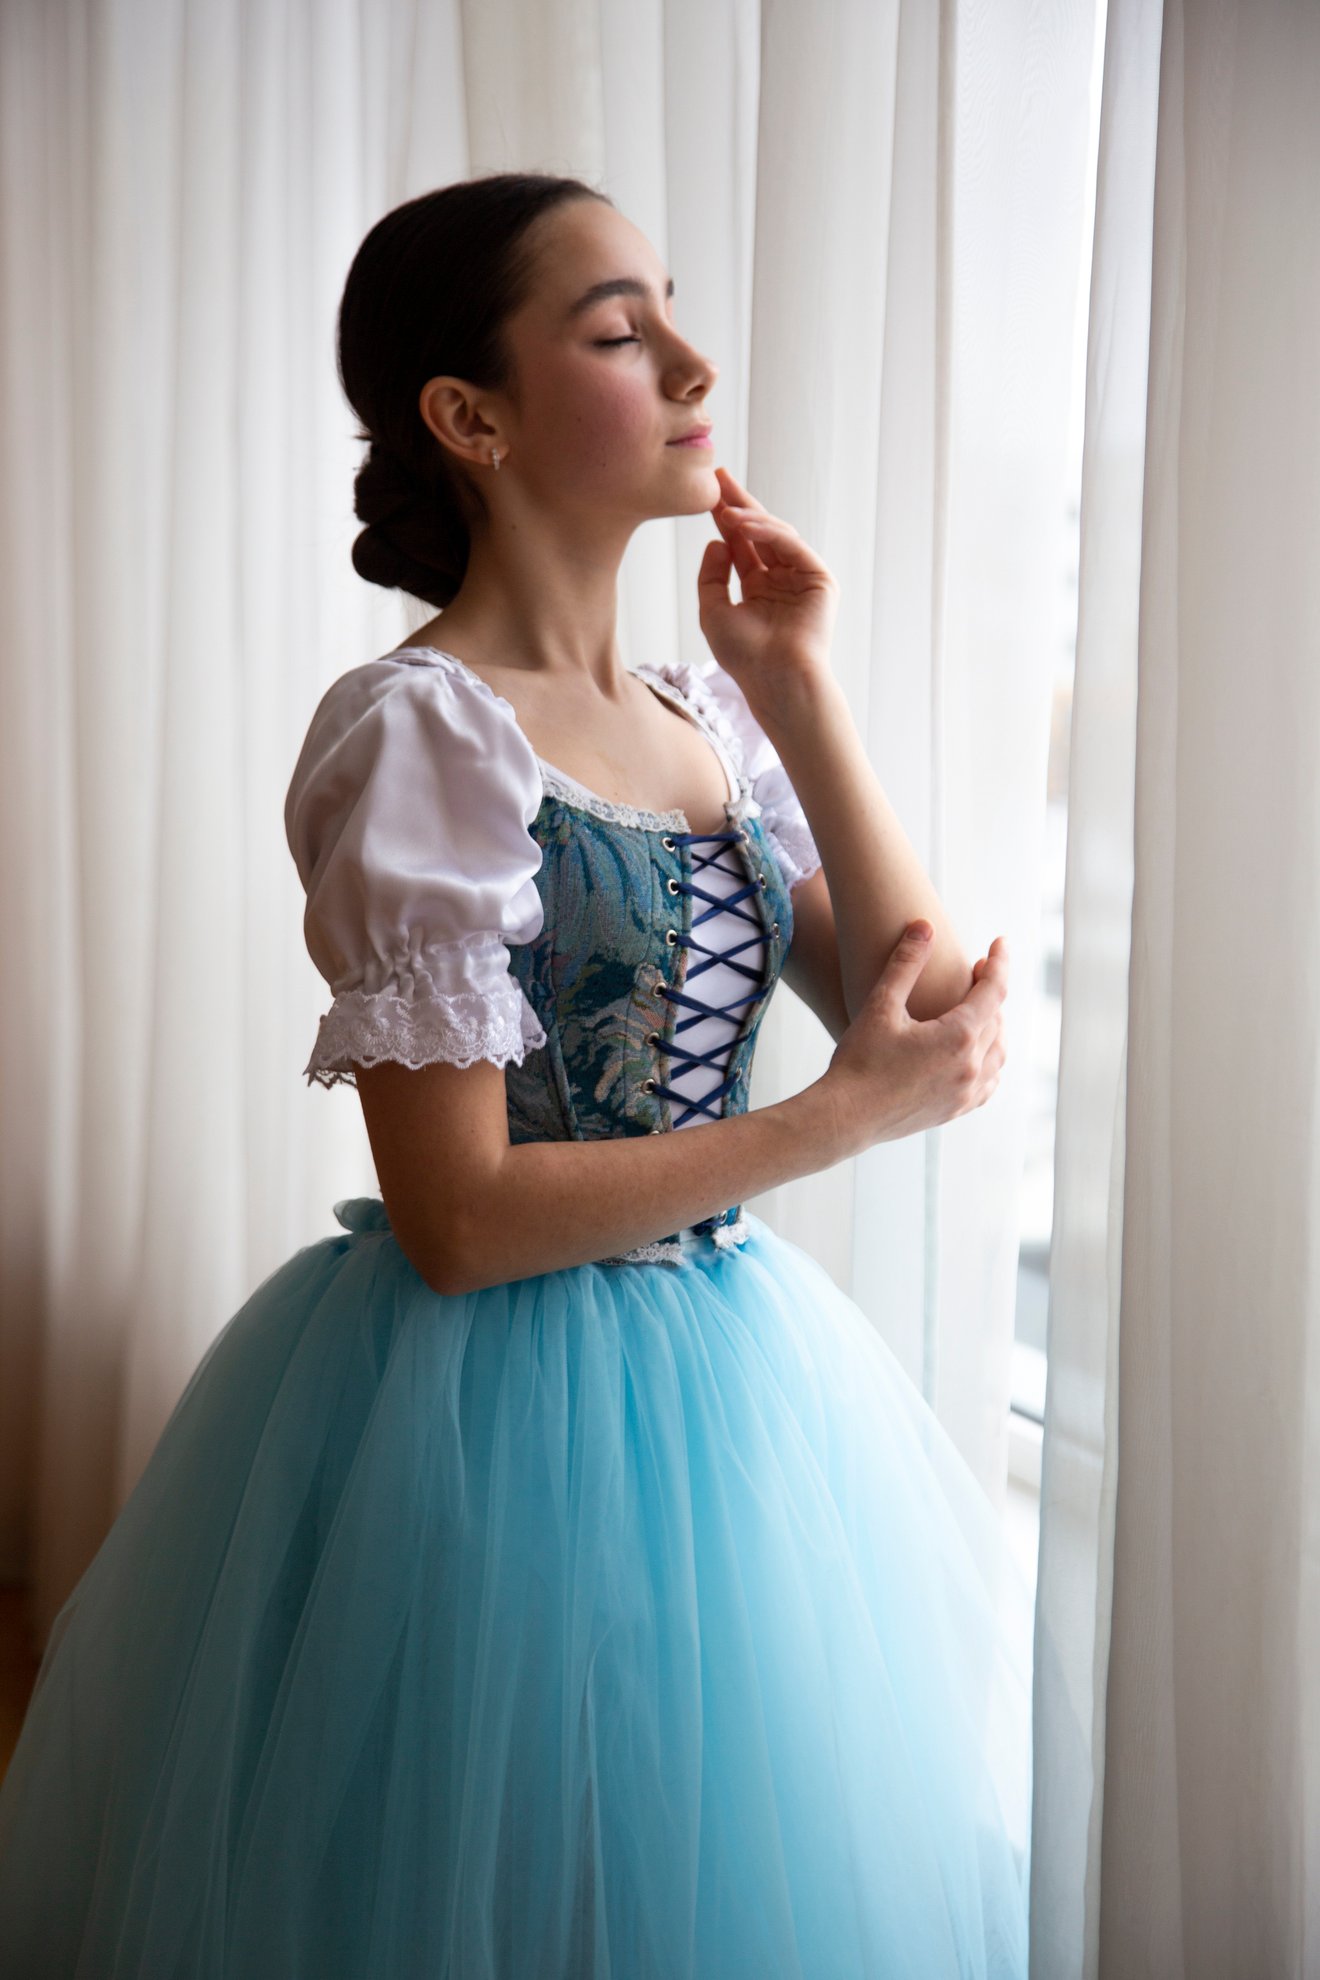 Ballet dancer. Juliana-Seed Nft